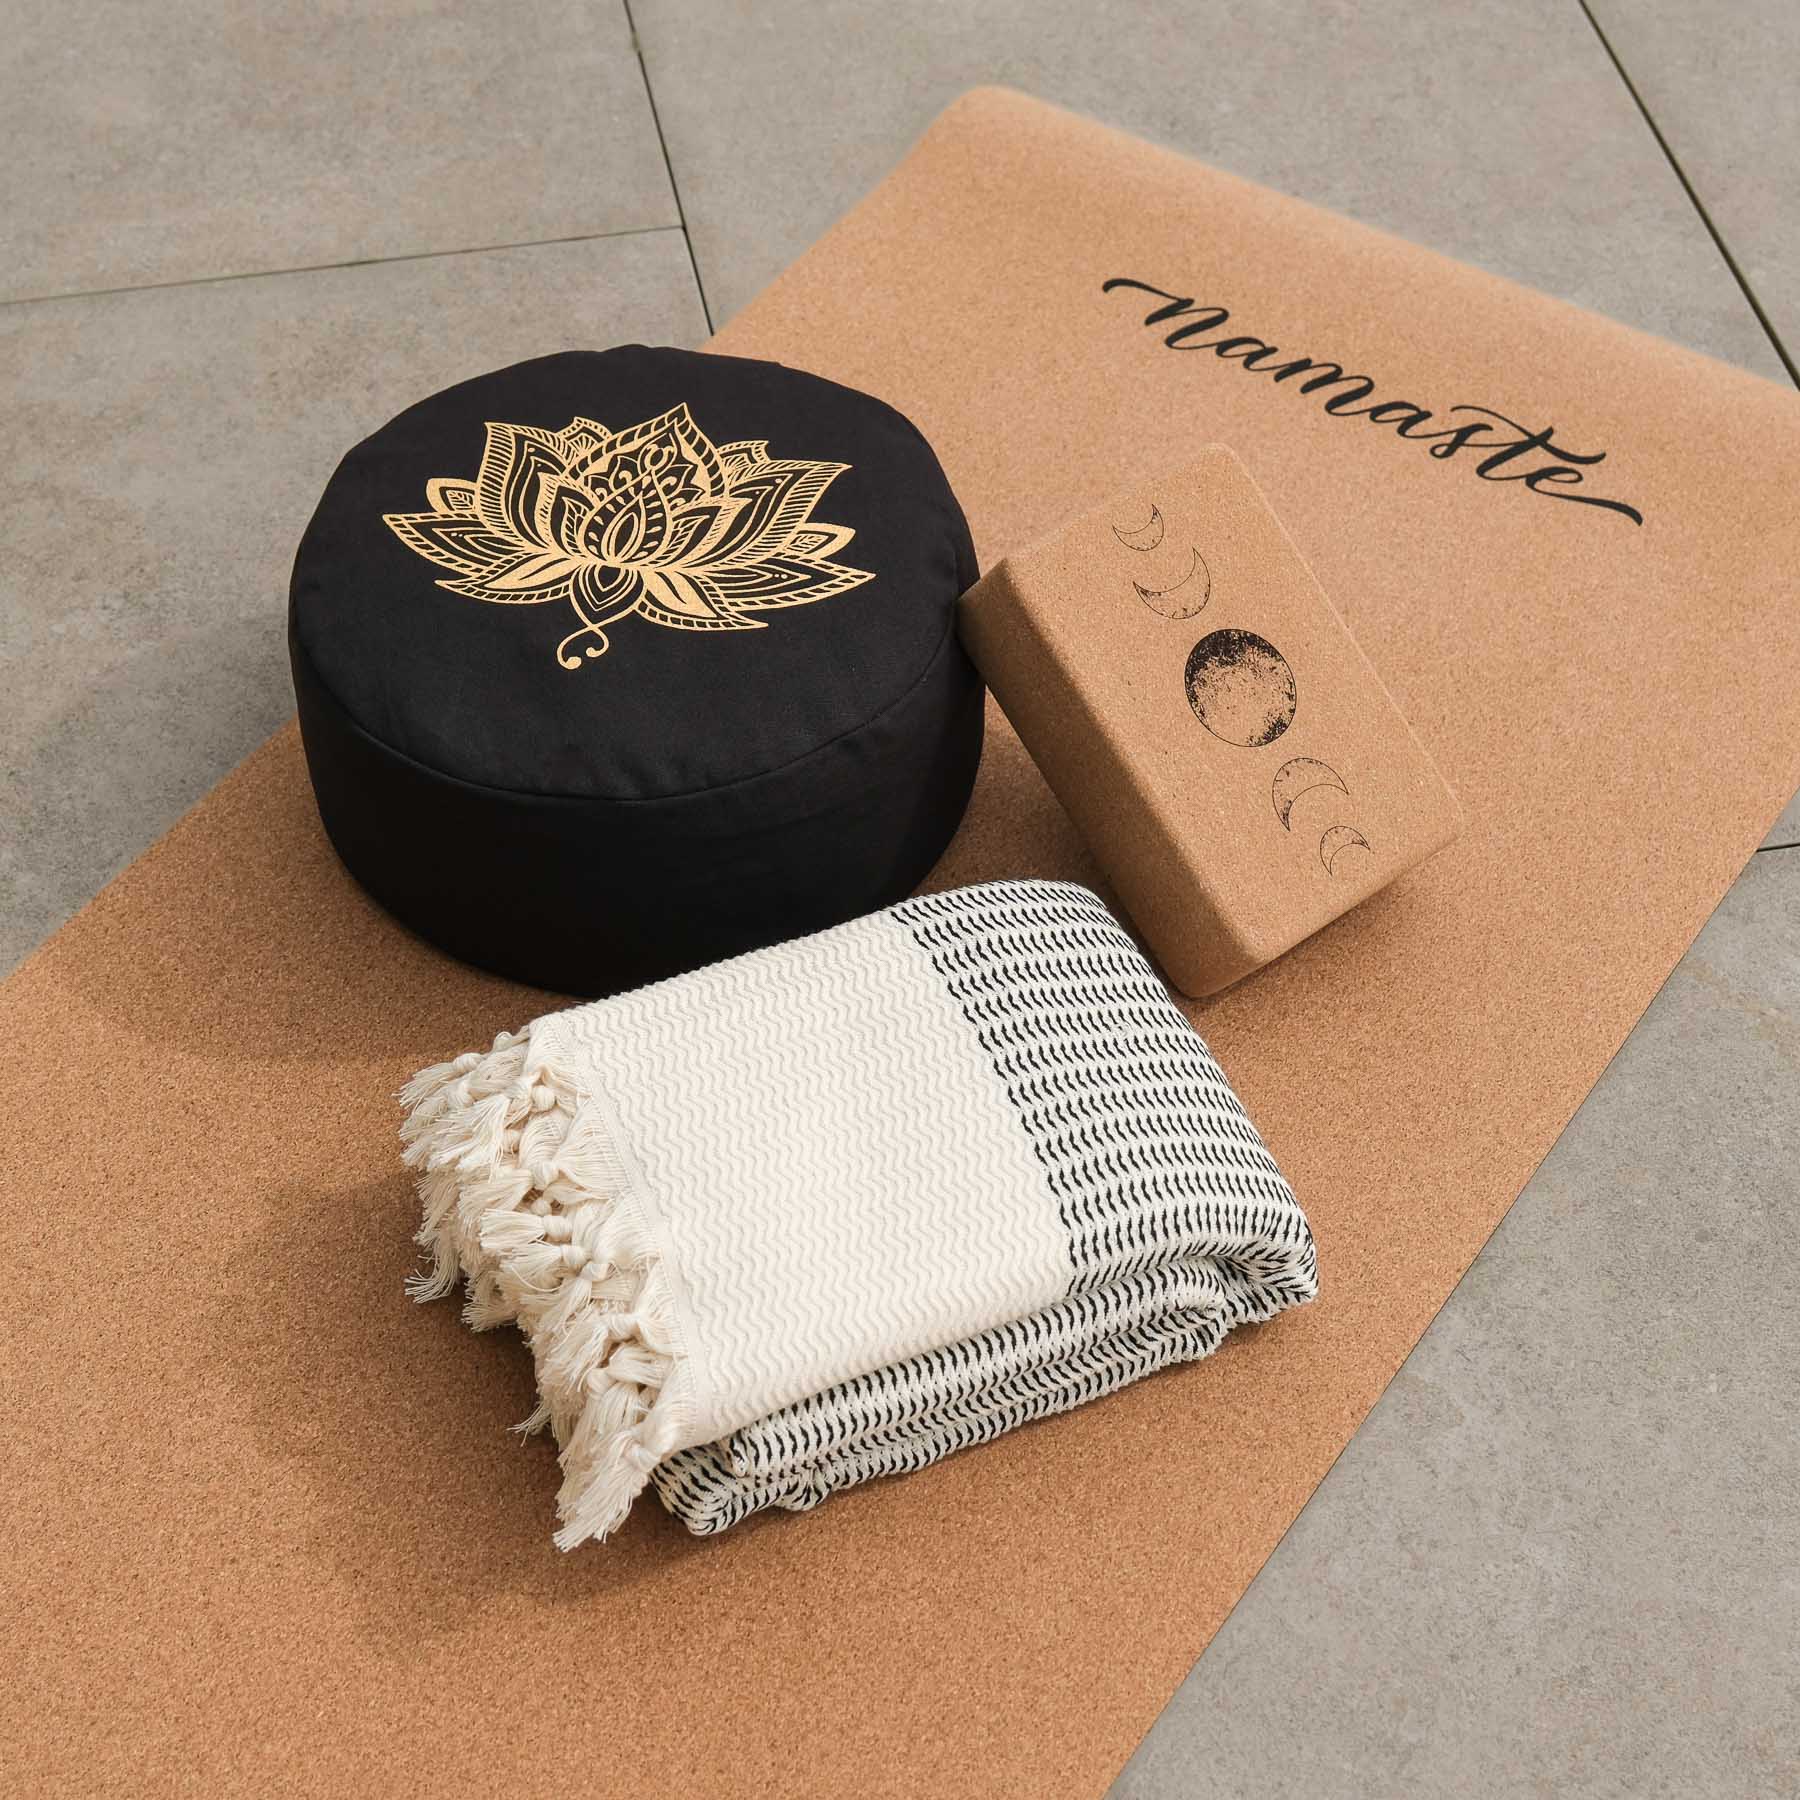 Coperta yoga Relax in cotone organico nero